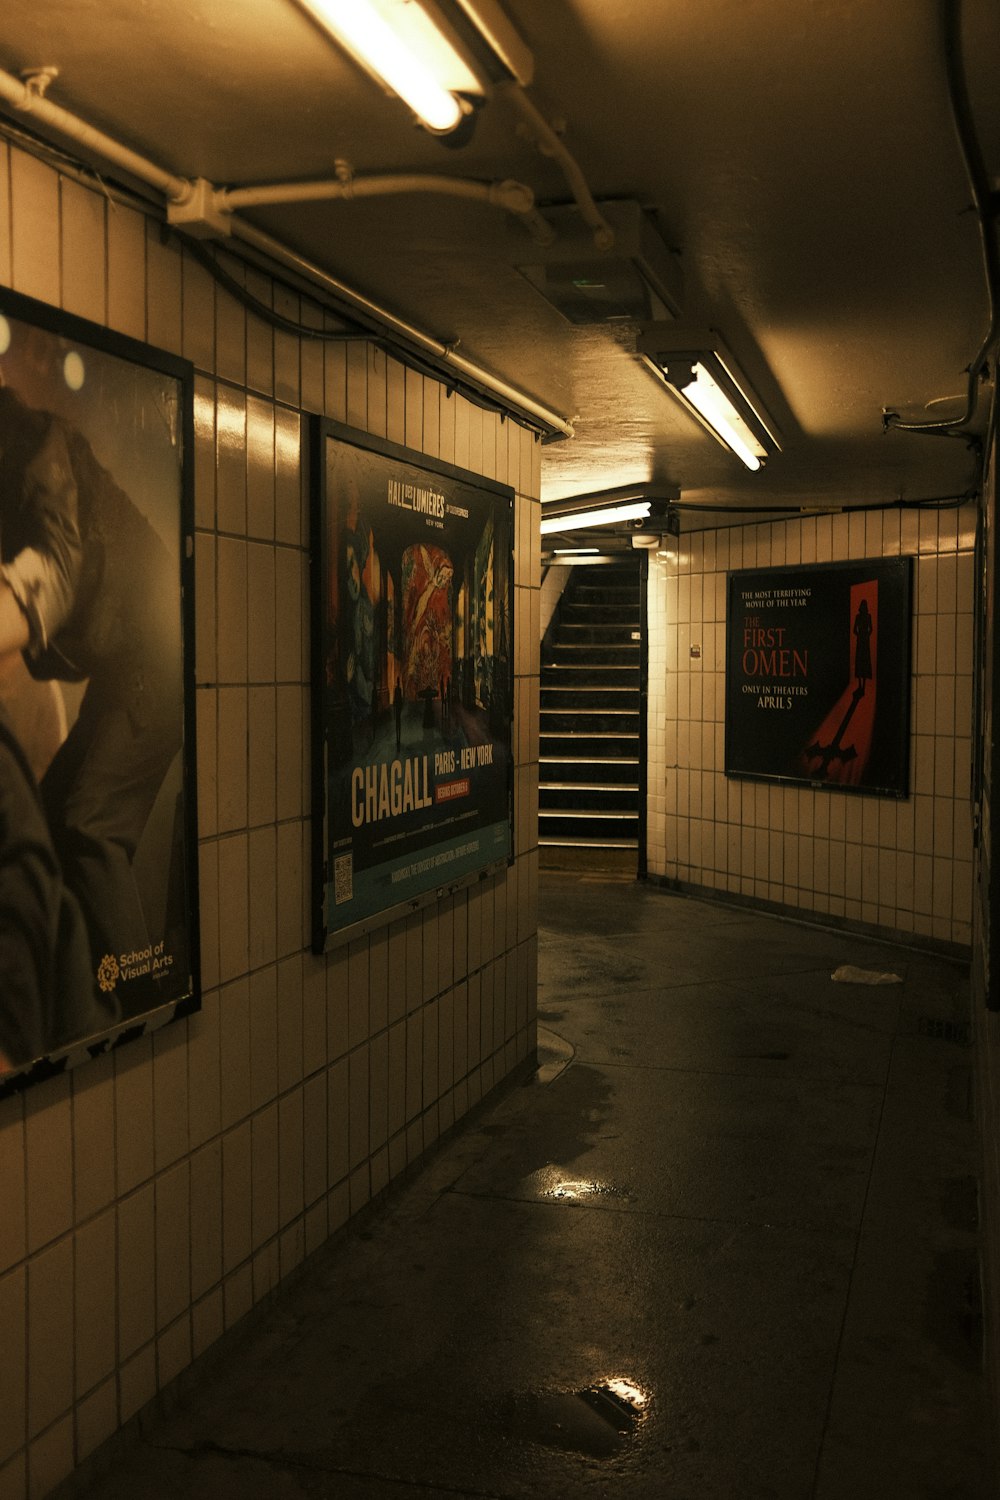 une station de métro avec des affiches sur le mur